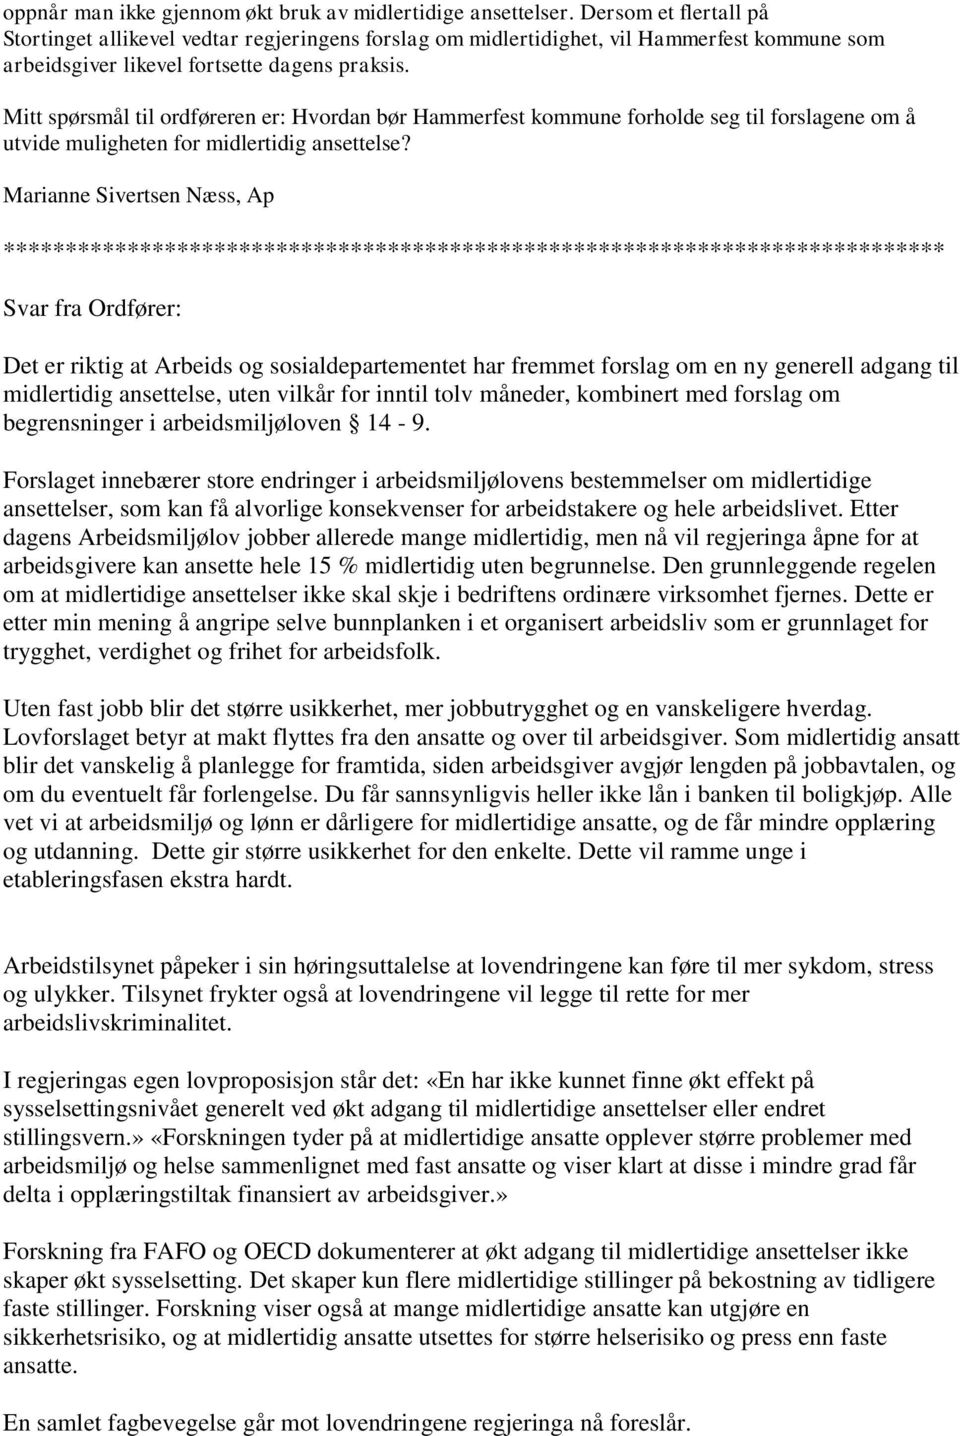 Mitt spørsmål til ordføreren er: Hvordan bør Hammerfest kommune forholde seg til forslagene om å utvide muligheten for midlertidig ansettelse?